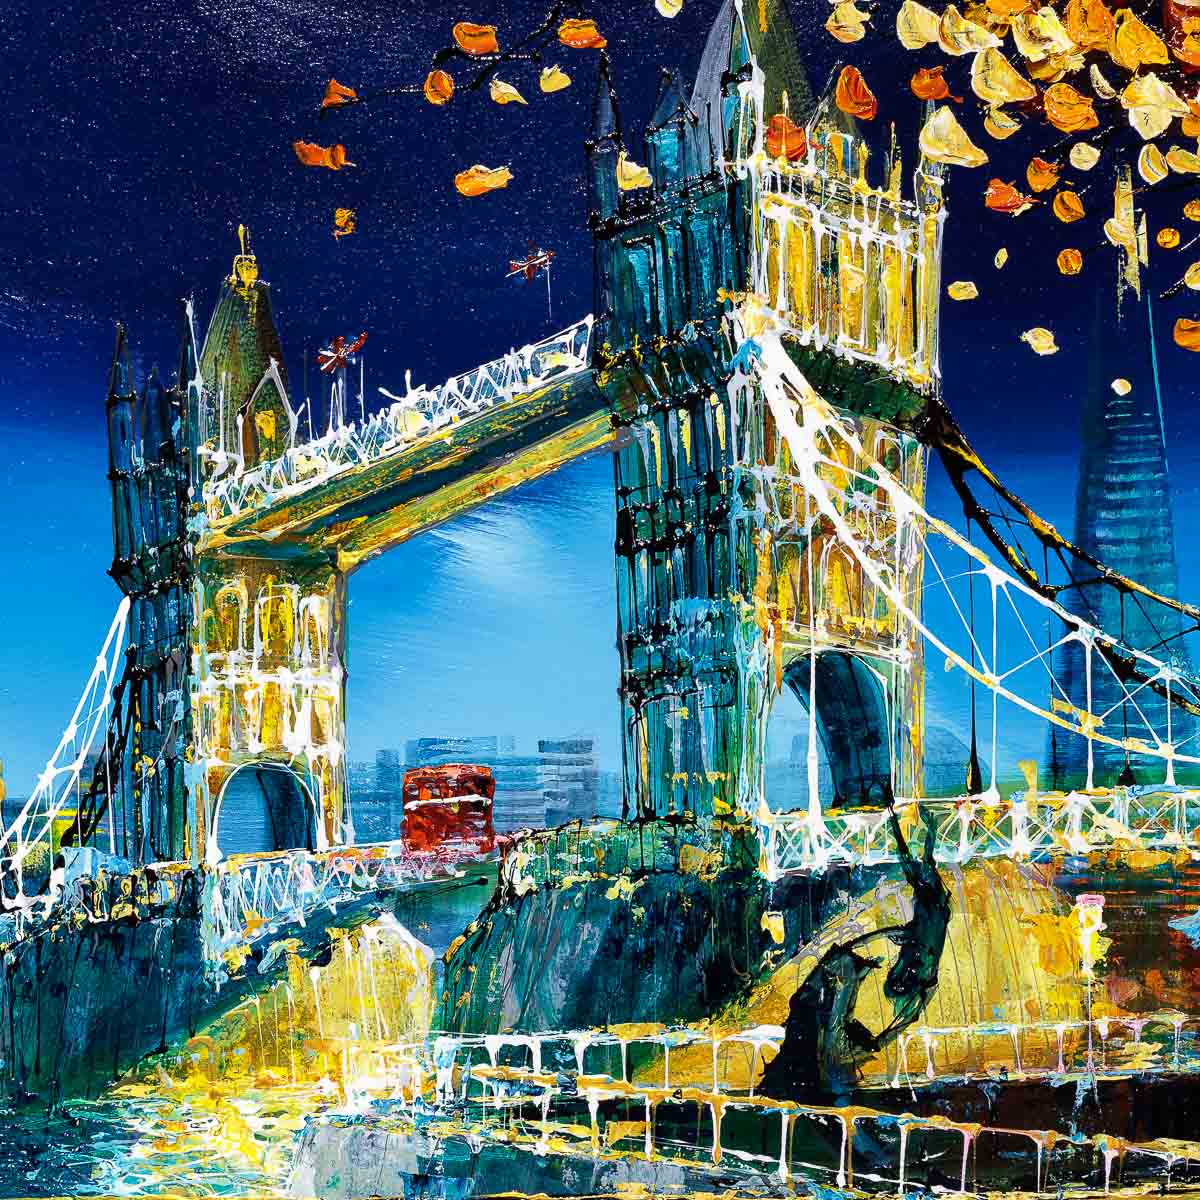 Tower Bridge In Autumn - Original Simon Wright Original